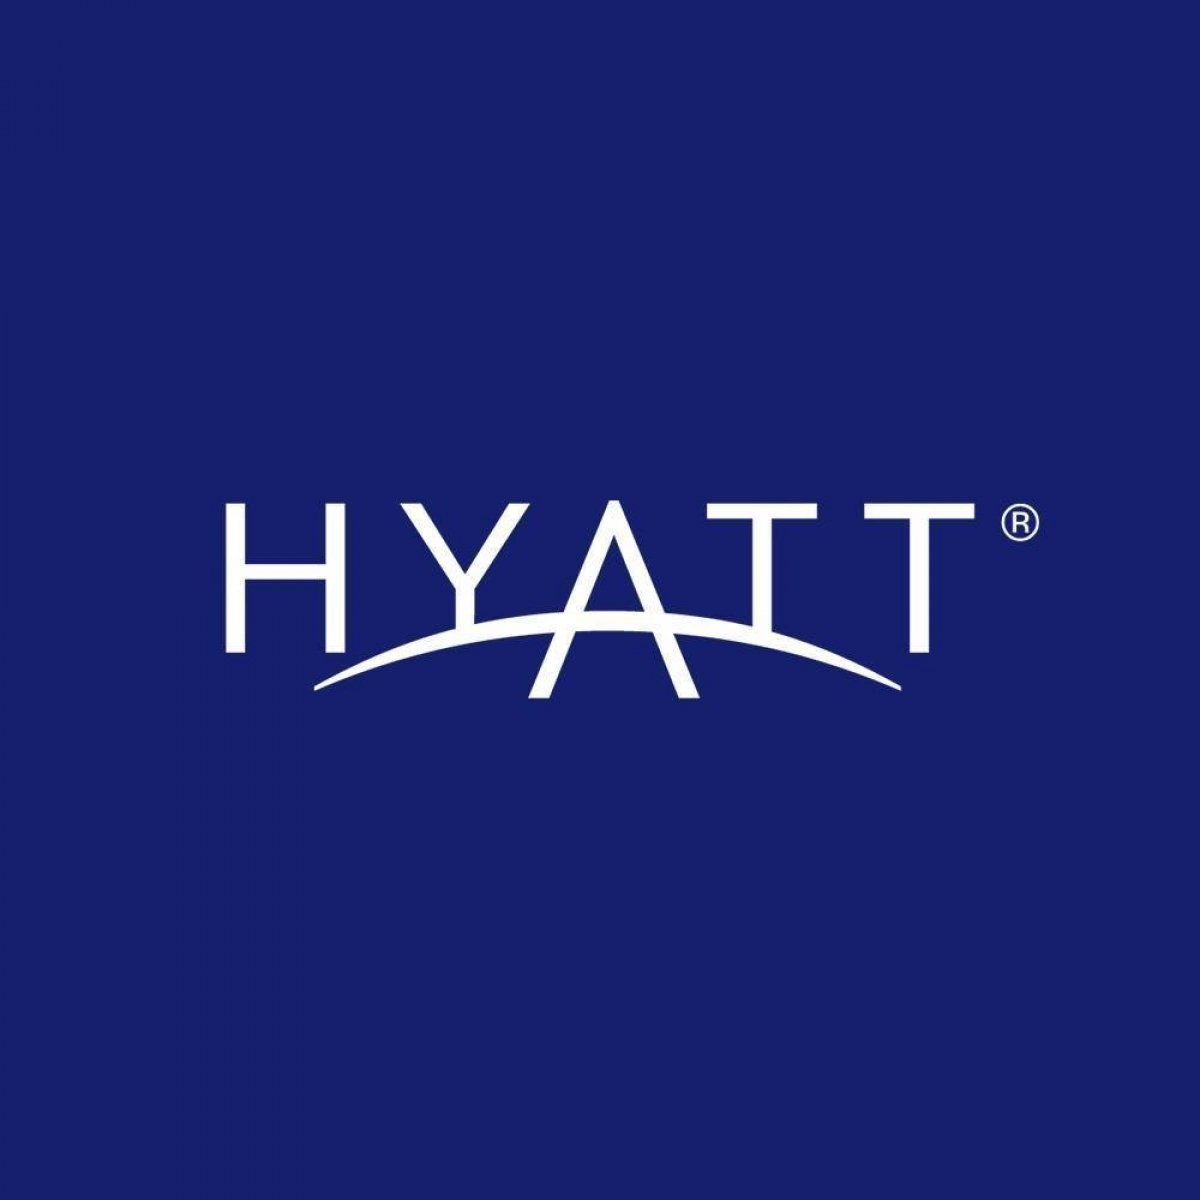 Hyatt hoteles